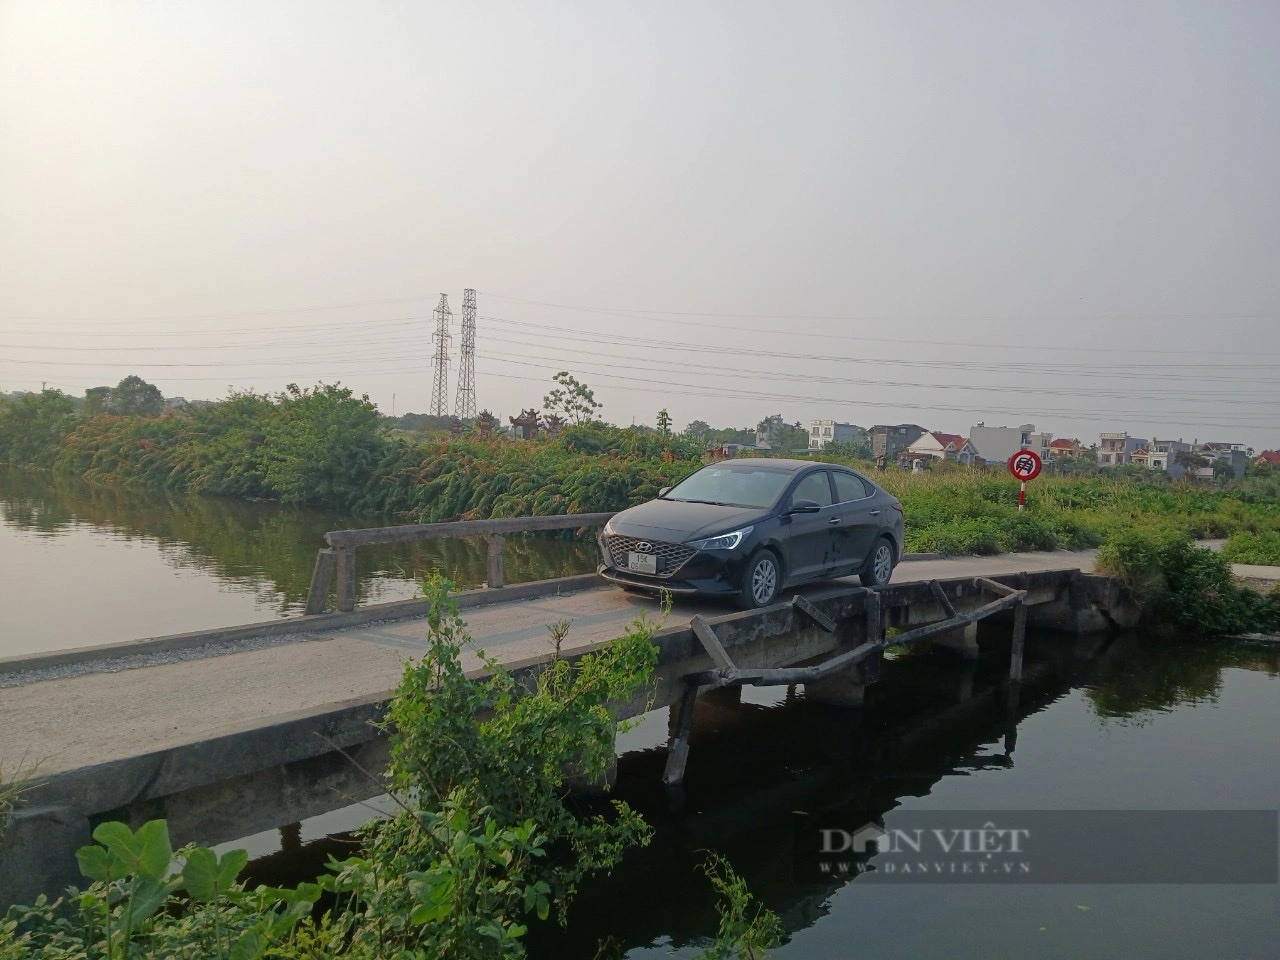 Bất chấp biển cấm, các phương tiện ô tô vẫn đi qua cầu, đường nông thôn Hải Phòng- Ảnh 2.